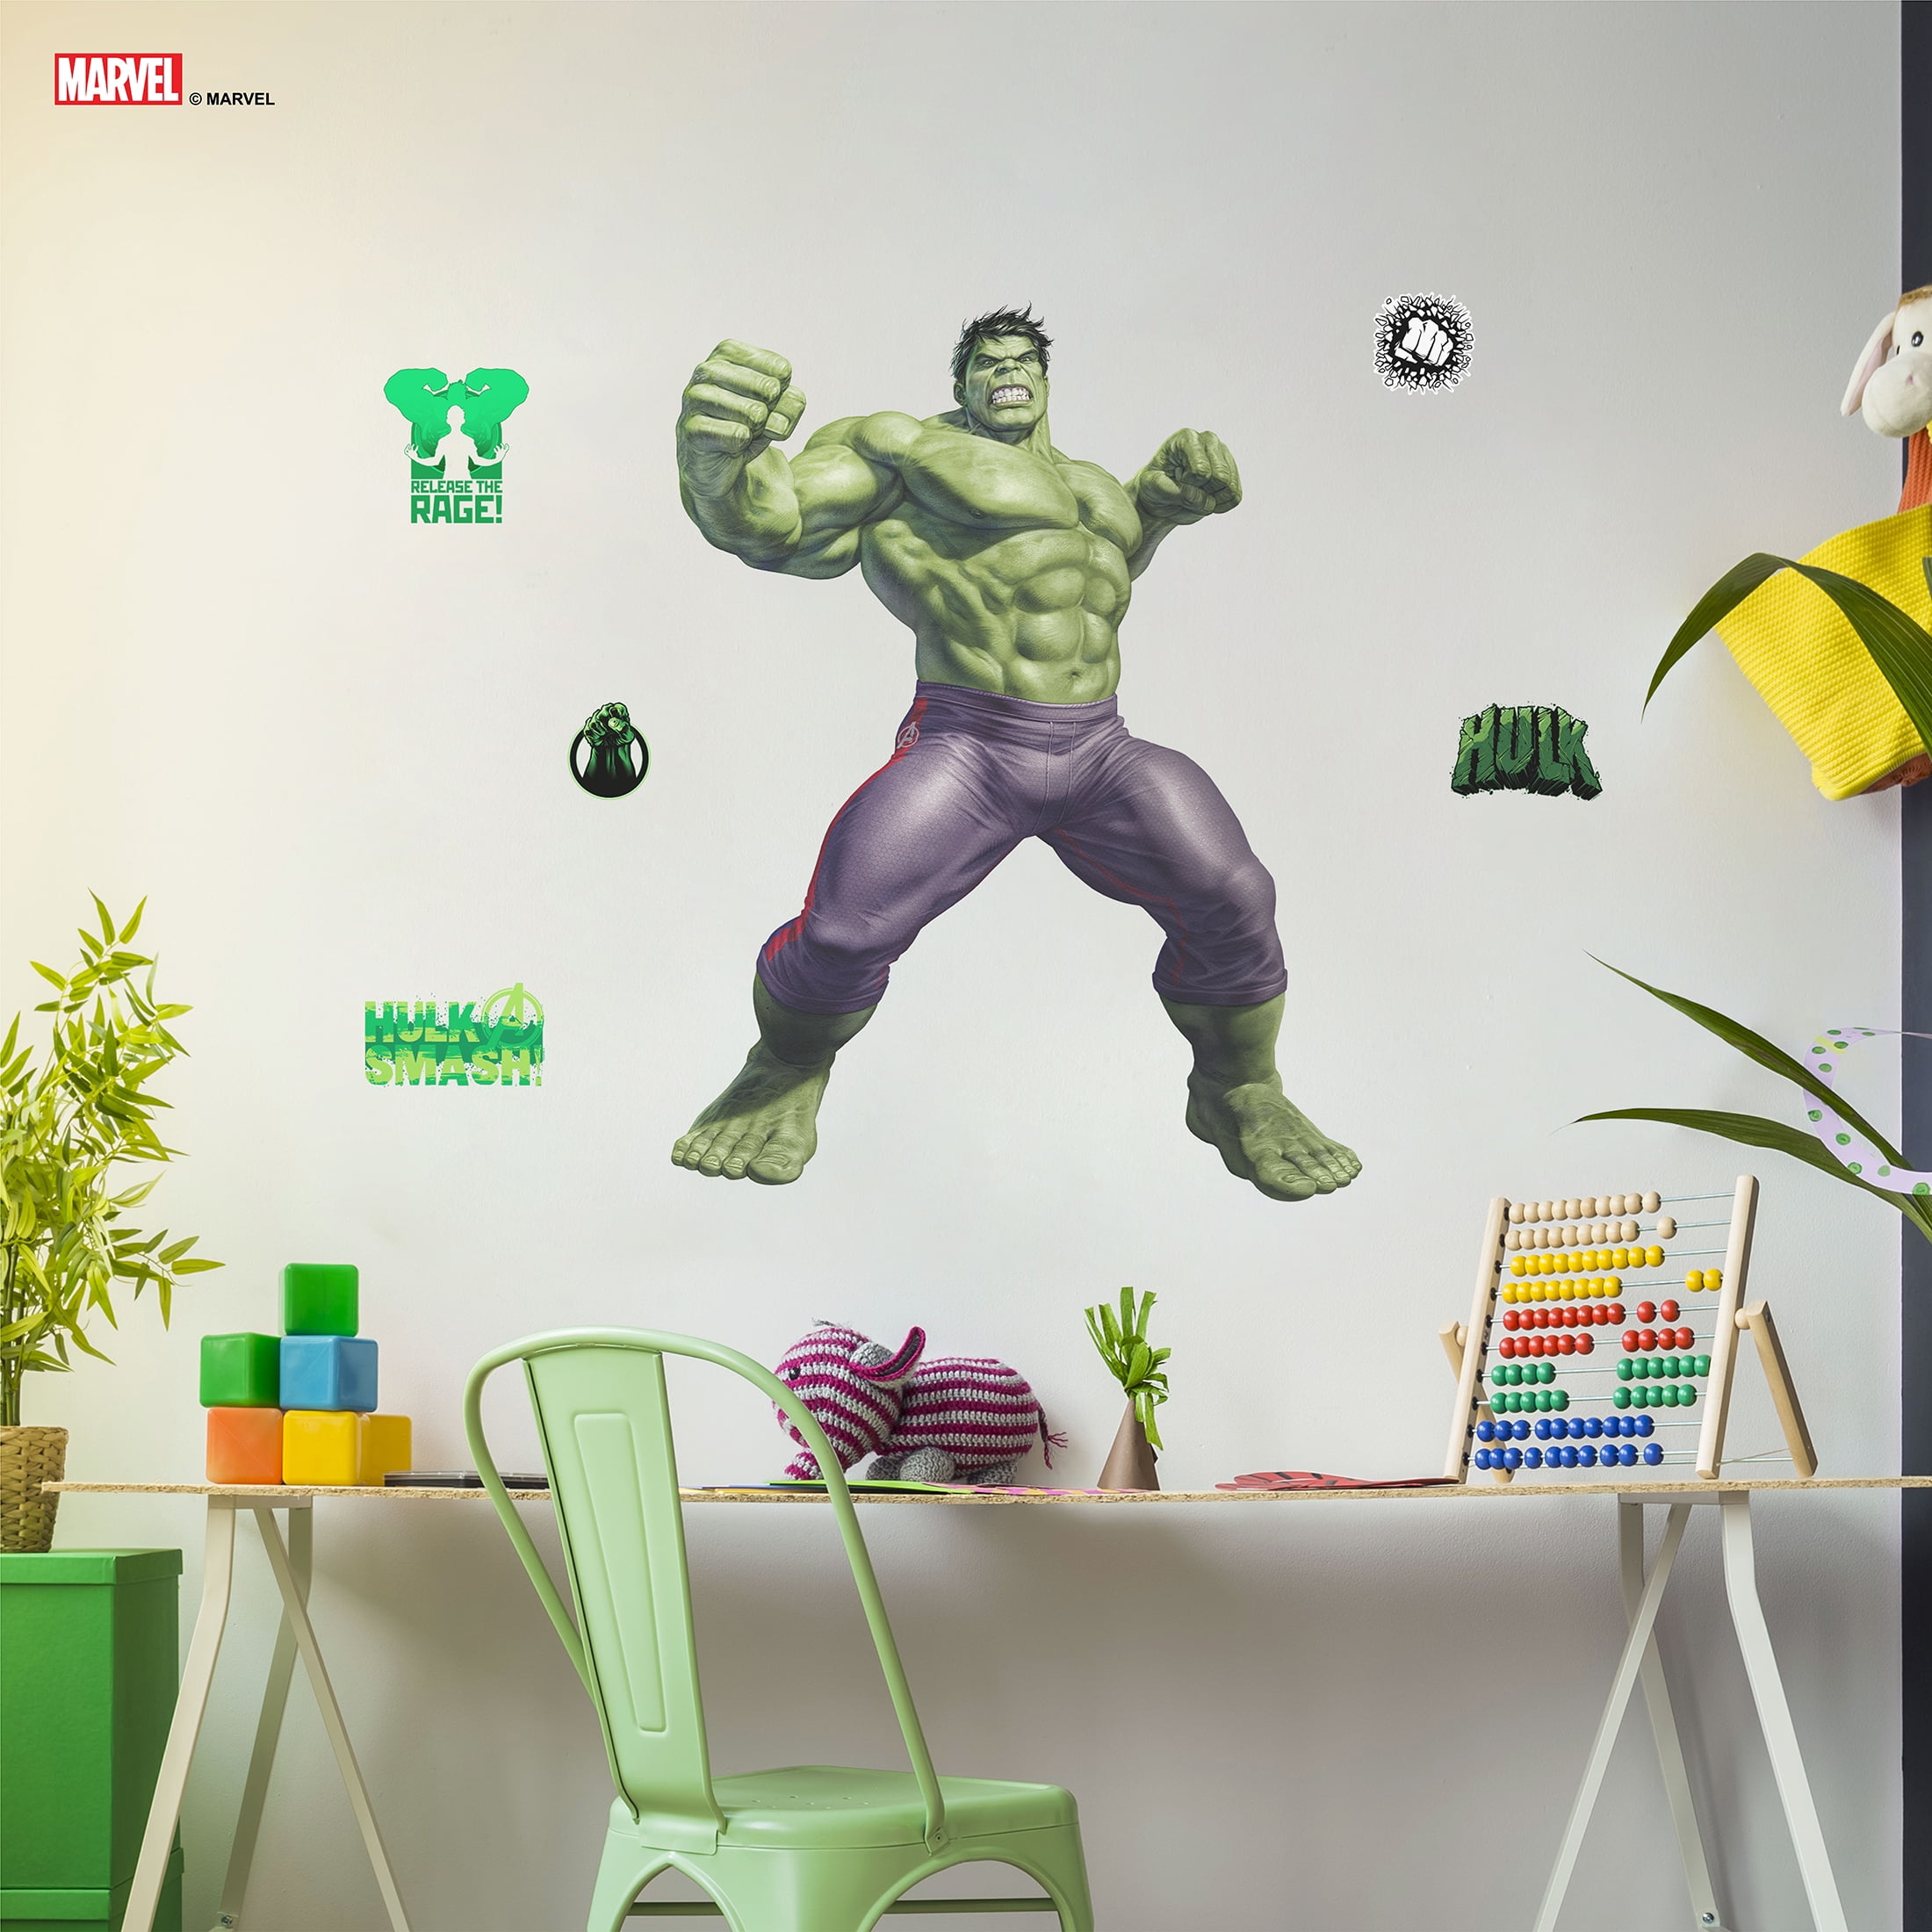 Hulk Fist 3d Wall Sticker Movies Quote Kids Room Decal Super Hero Cartoon Decor 